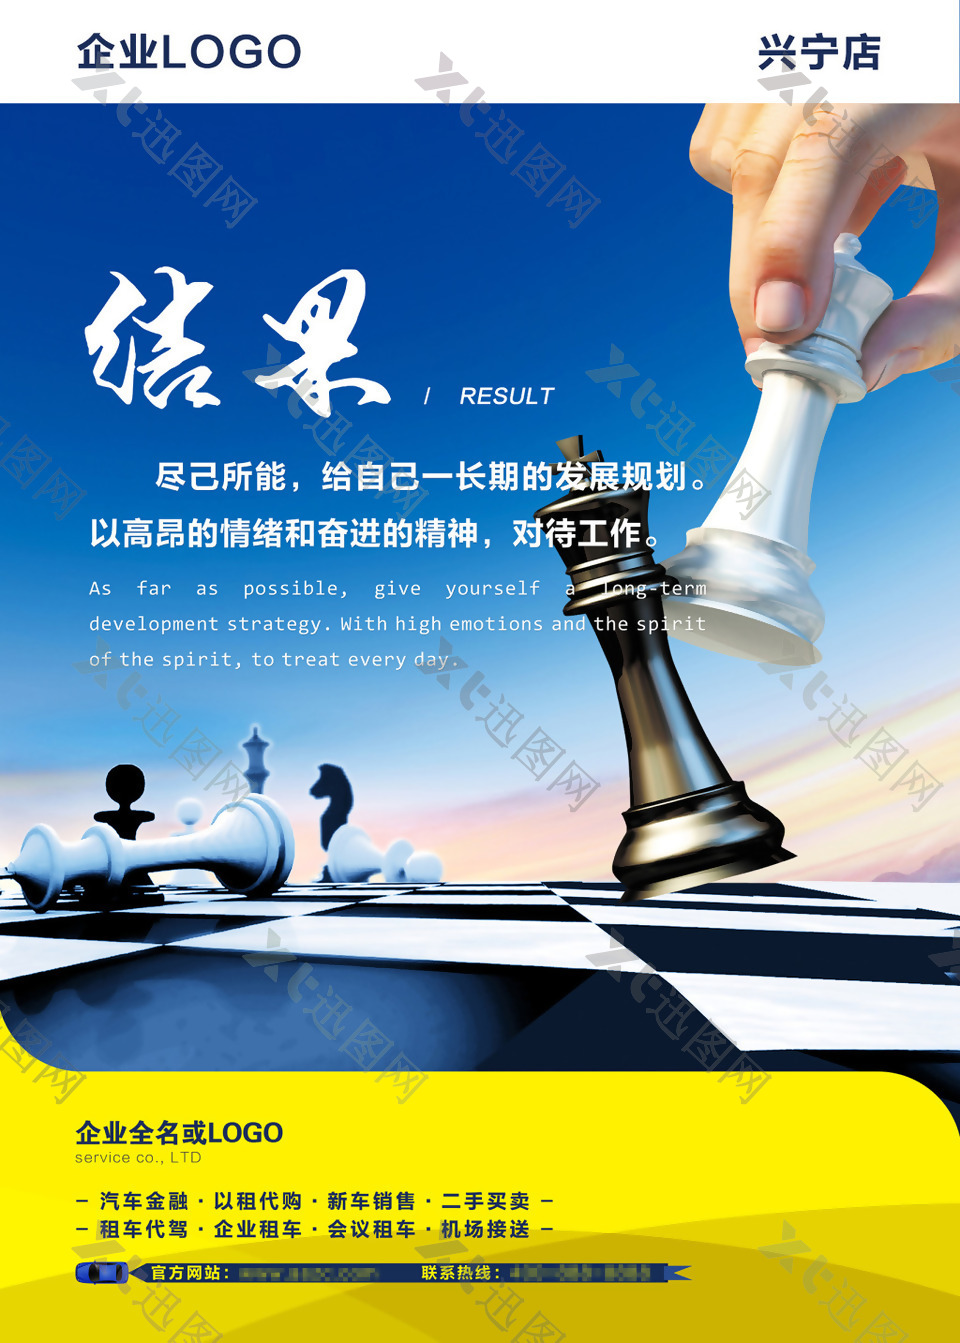 企业文化结果发展规划国际象棋精神蓝色海报